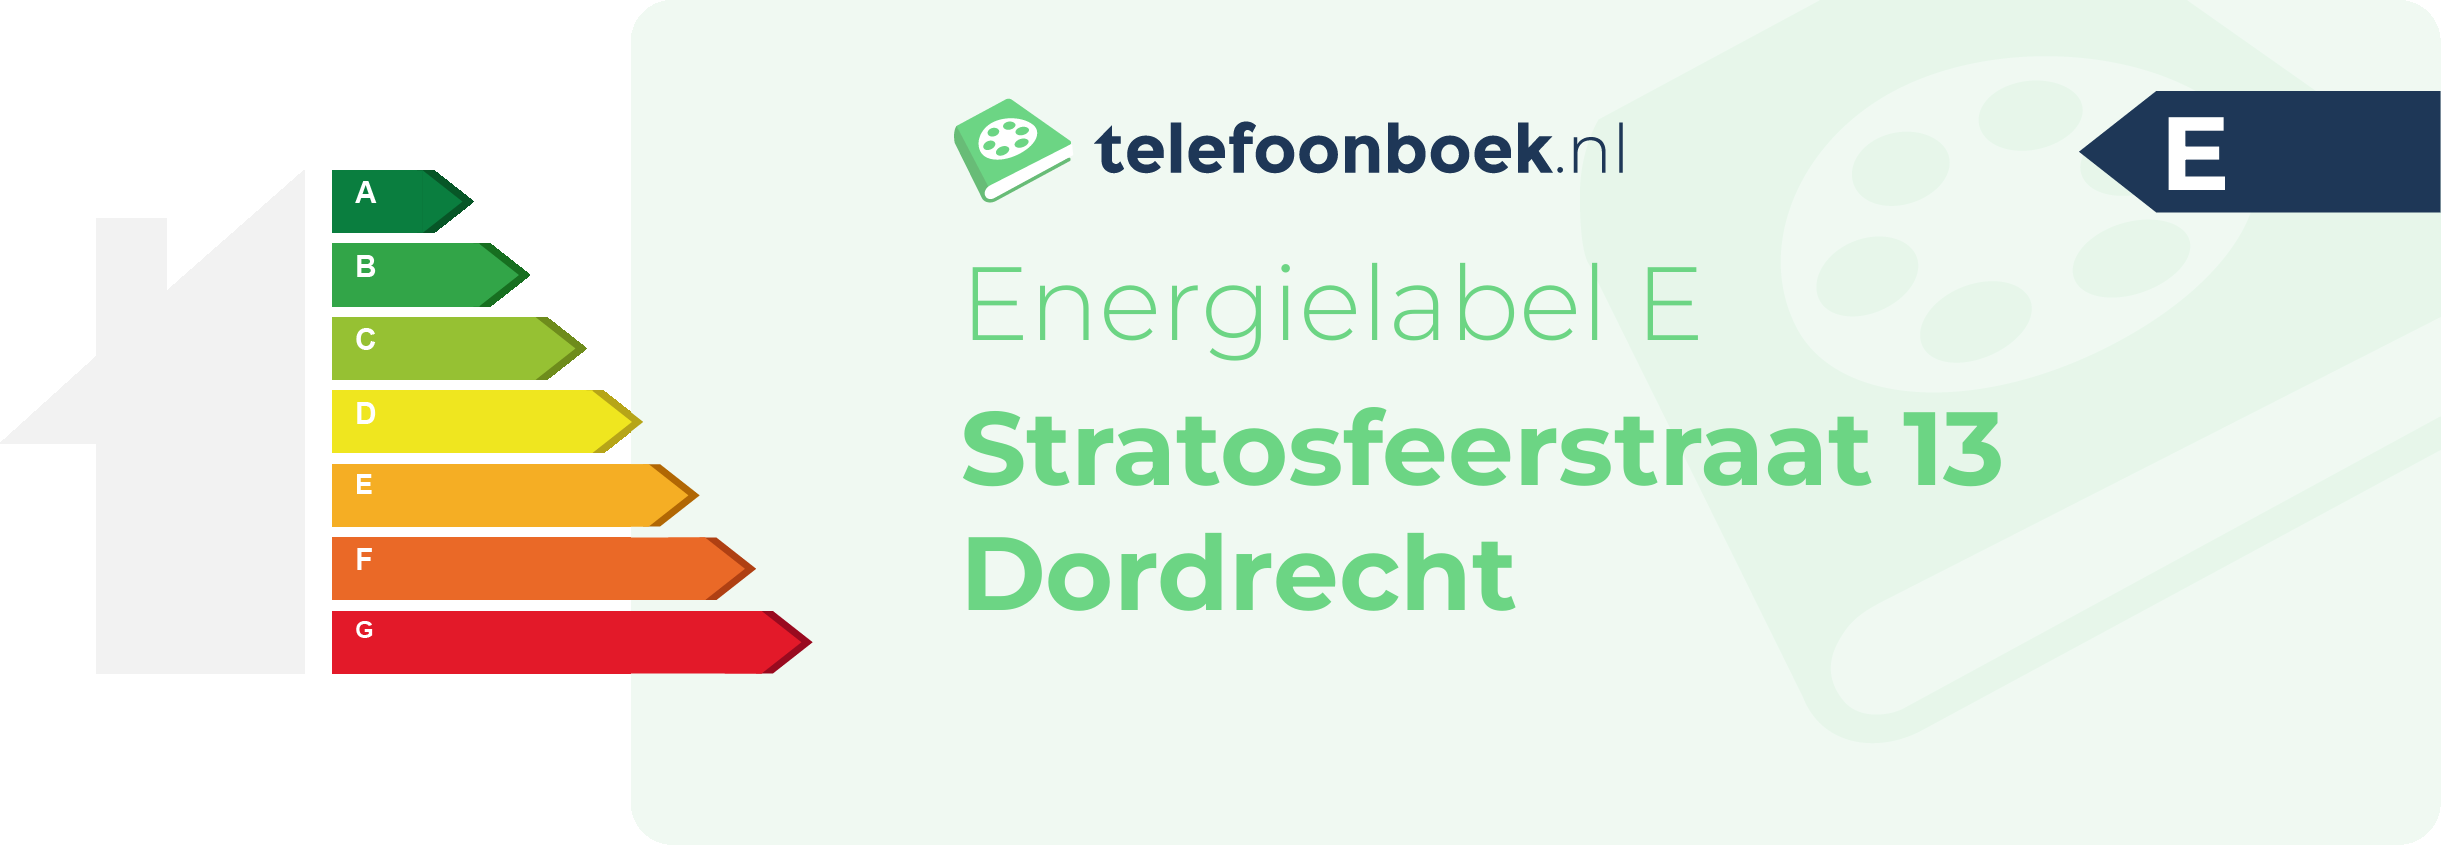 Energielabel Stratosfeerstraat 13 Dordrecht